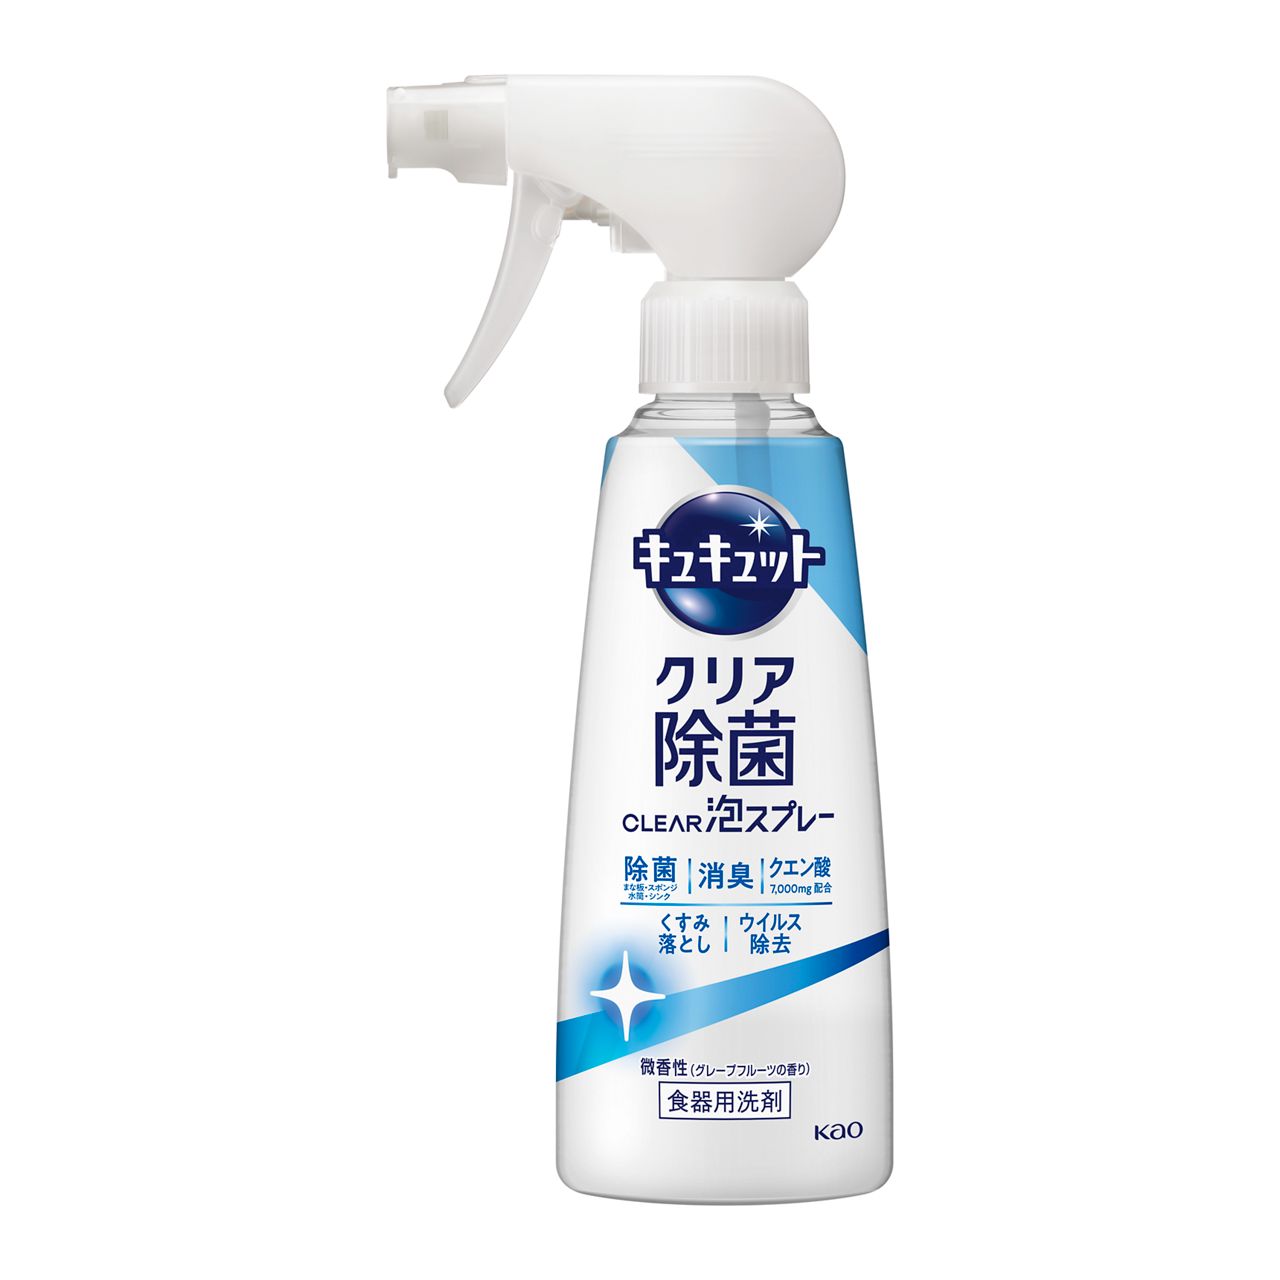 ①クラシエ洗顔料 微香性  男性用×10個 - 3